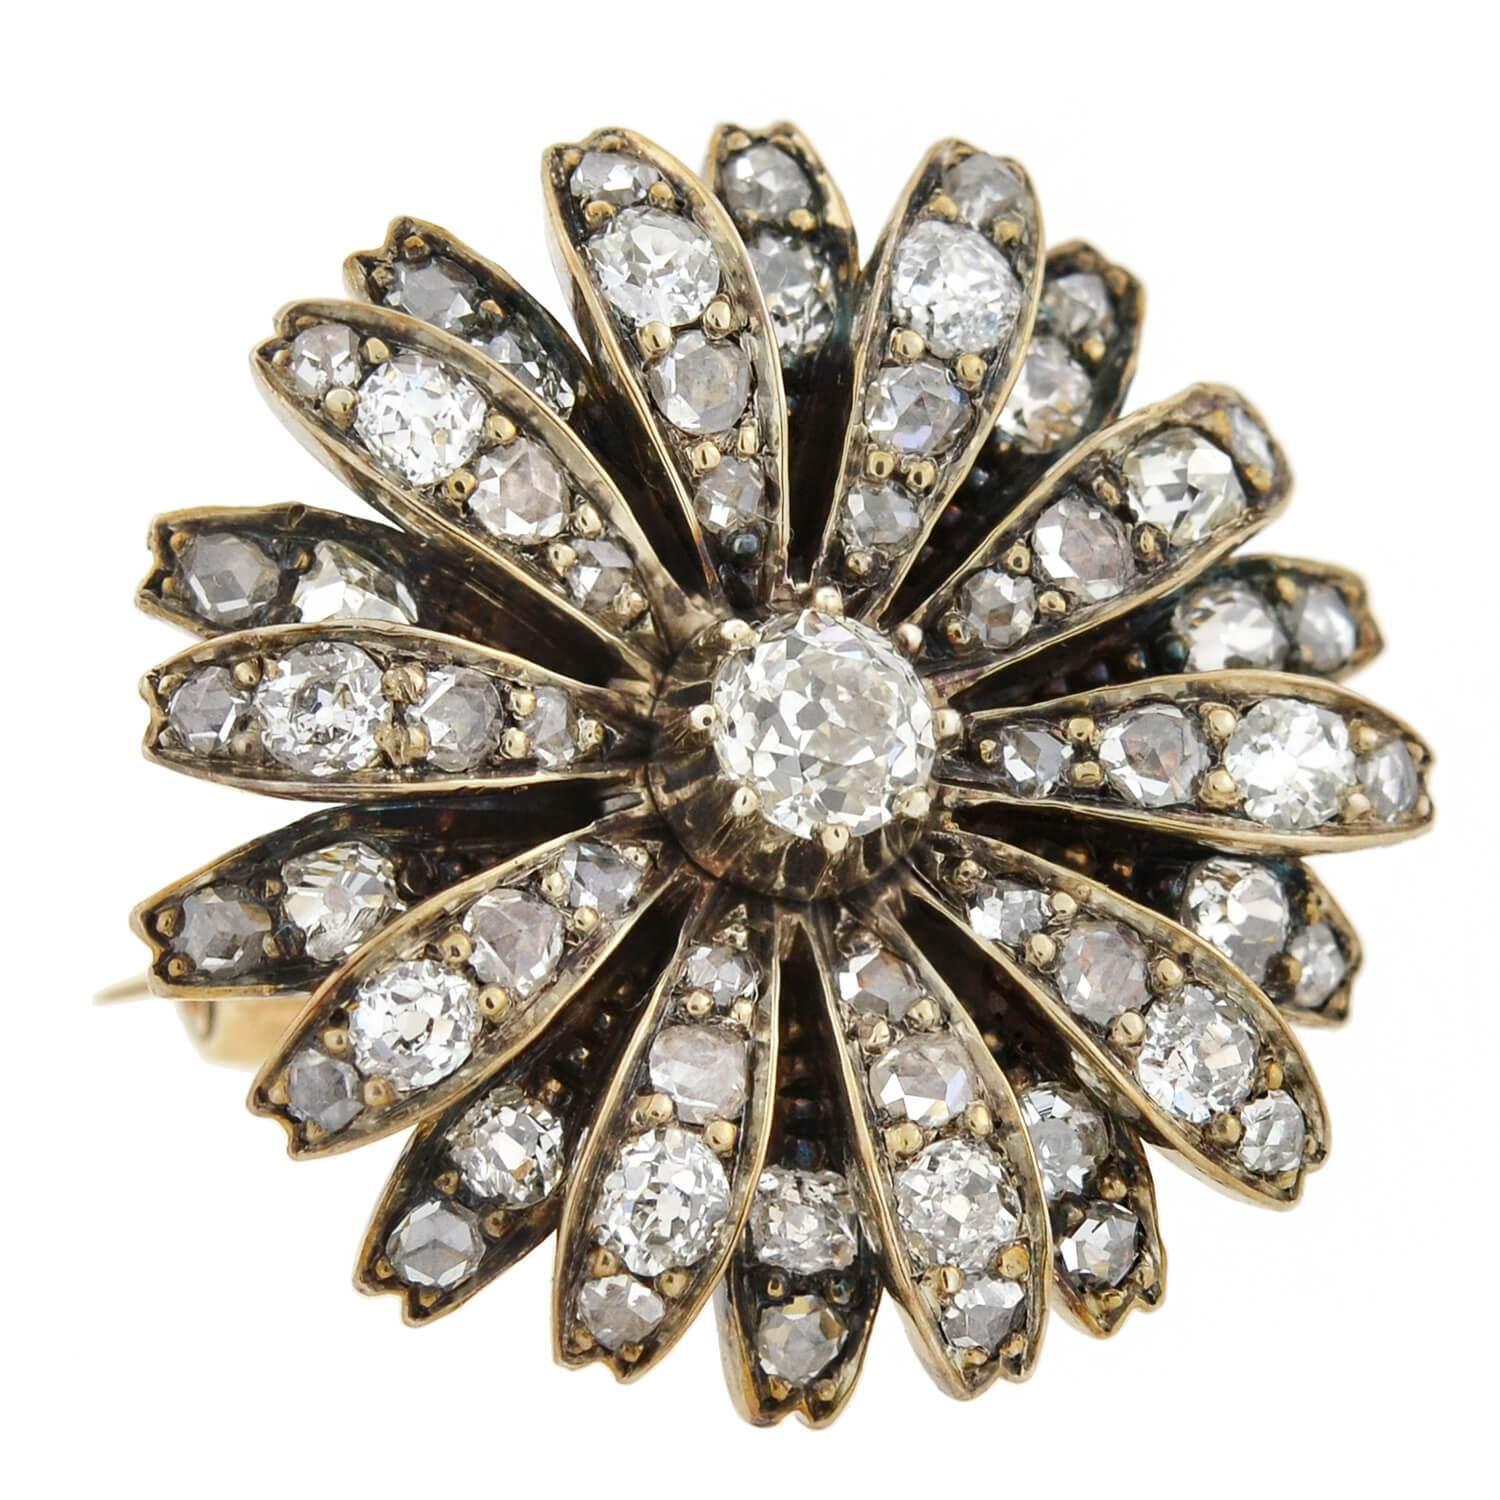 Eine schöne Diamantblumen-Anstecknadel aus der viktorianischen Zeit (ca. 1880)! Diese exquisite Sterling gekrönt 14kt Gelbgold Stück ist mit einer doppelten Schicht von Diamanten verkrustete Blütenblätter, die eine größere alte Mine Cut Diamant in